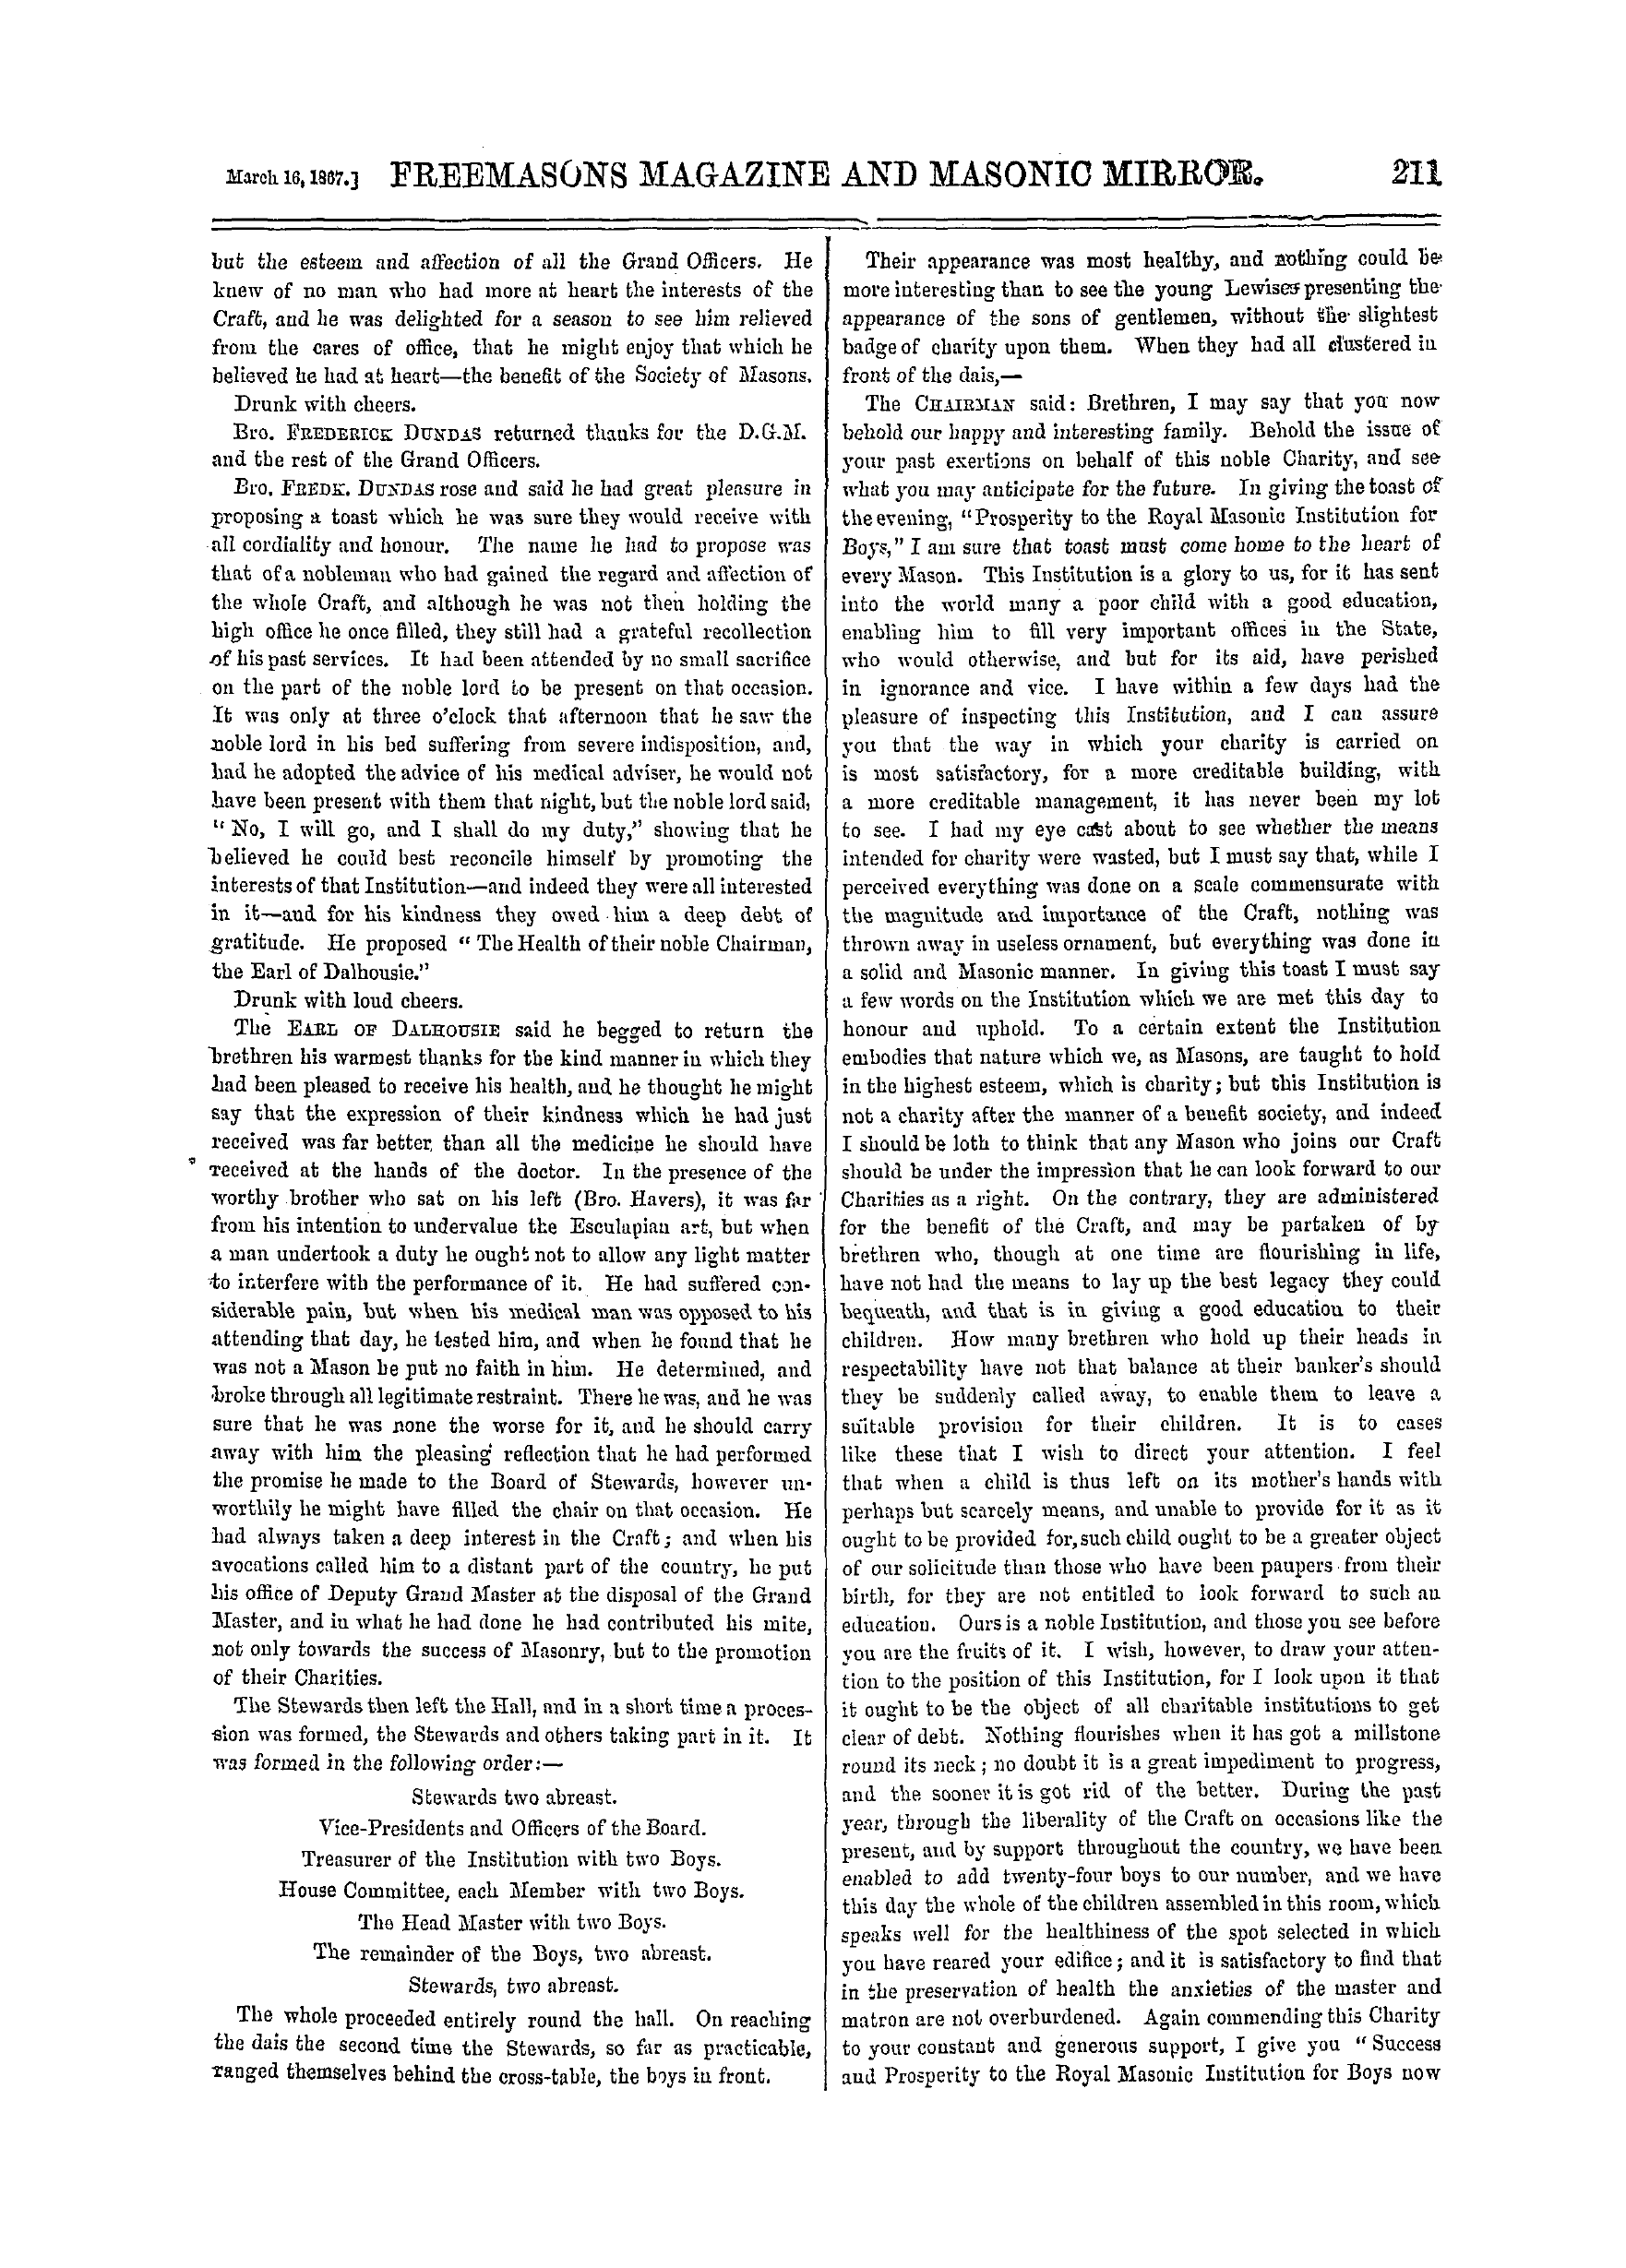 The Freemasons' Monthly Magazine: 1867-03-16: 11